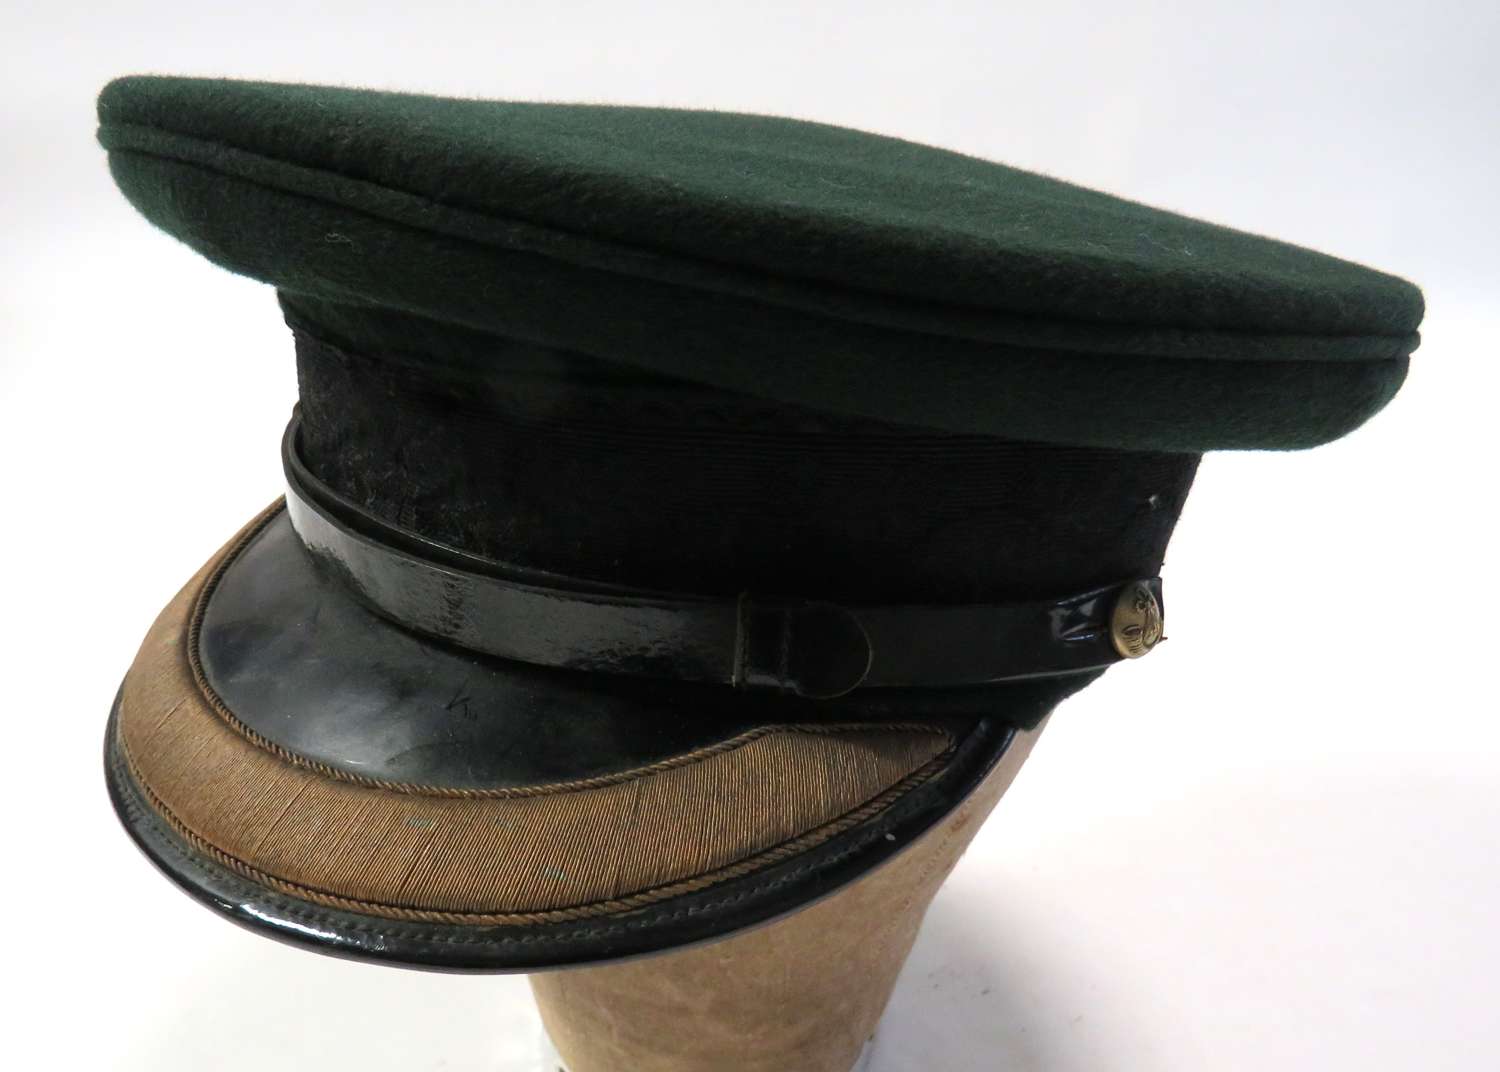 Post 1952 Light Infantry Field Officer's Cap